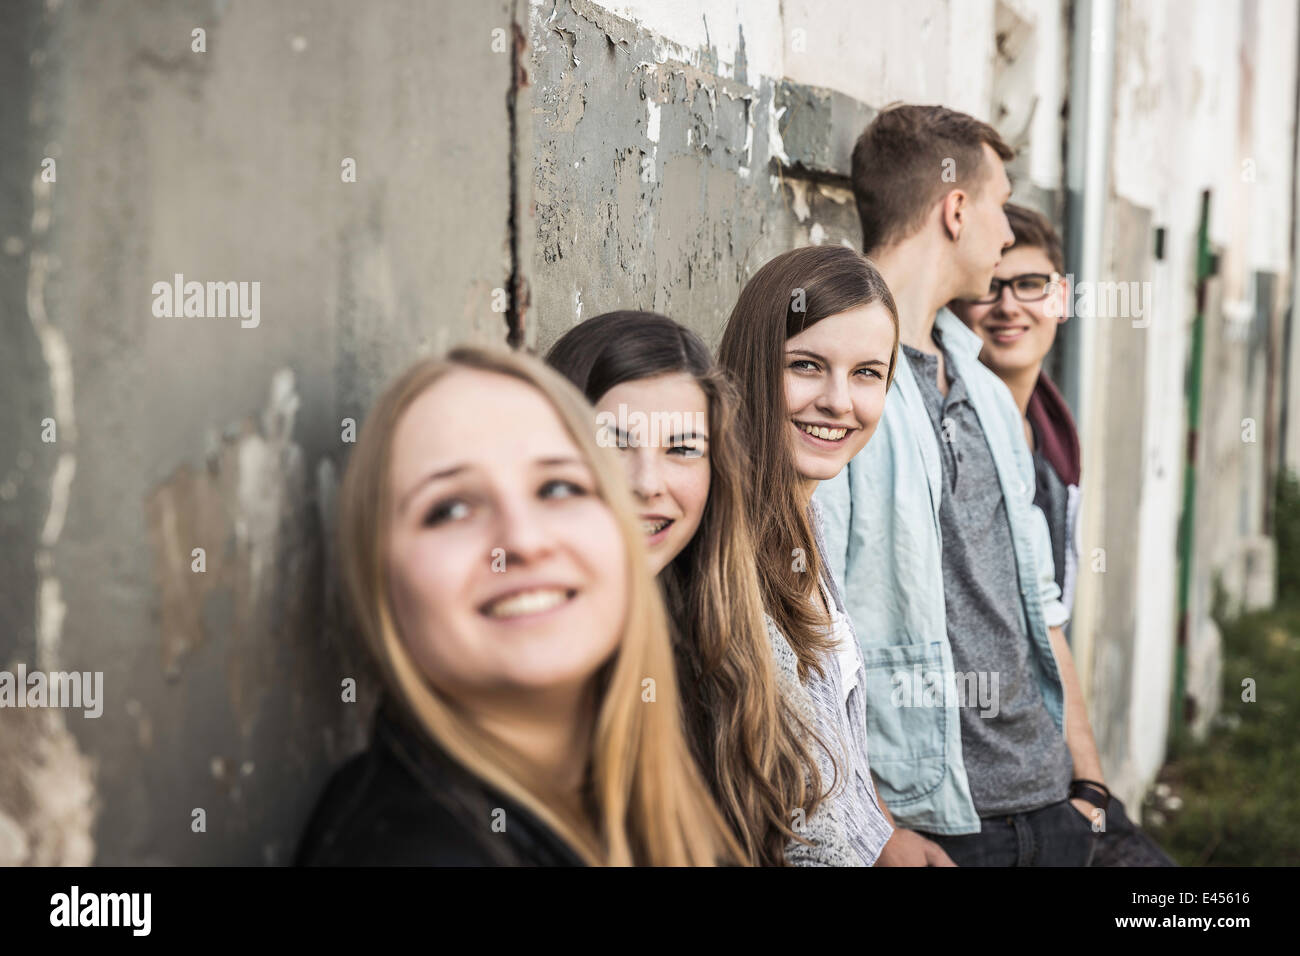 Los adolescentes que cuelgan en edificio abandonado Foto de stock